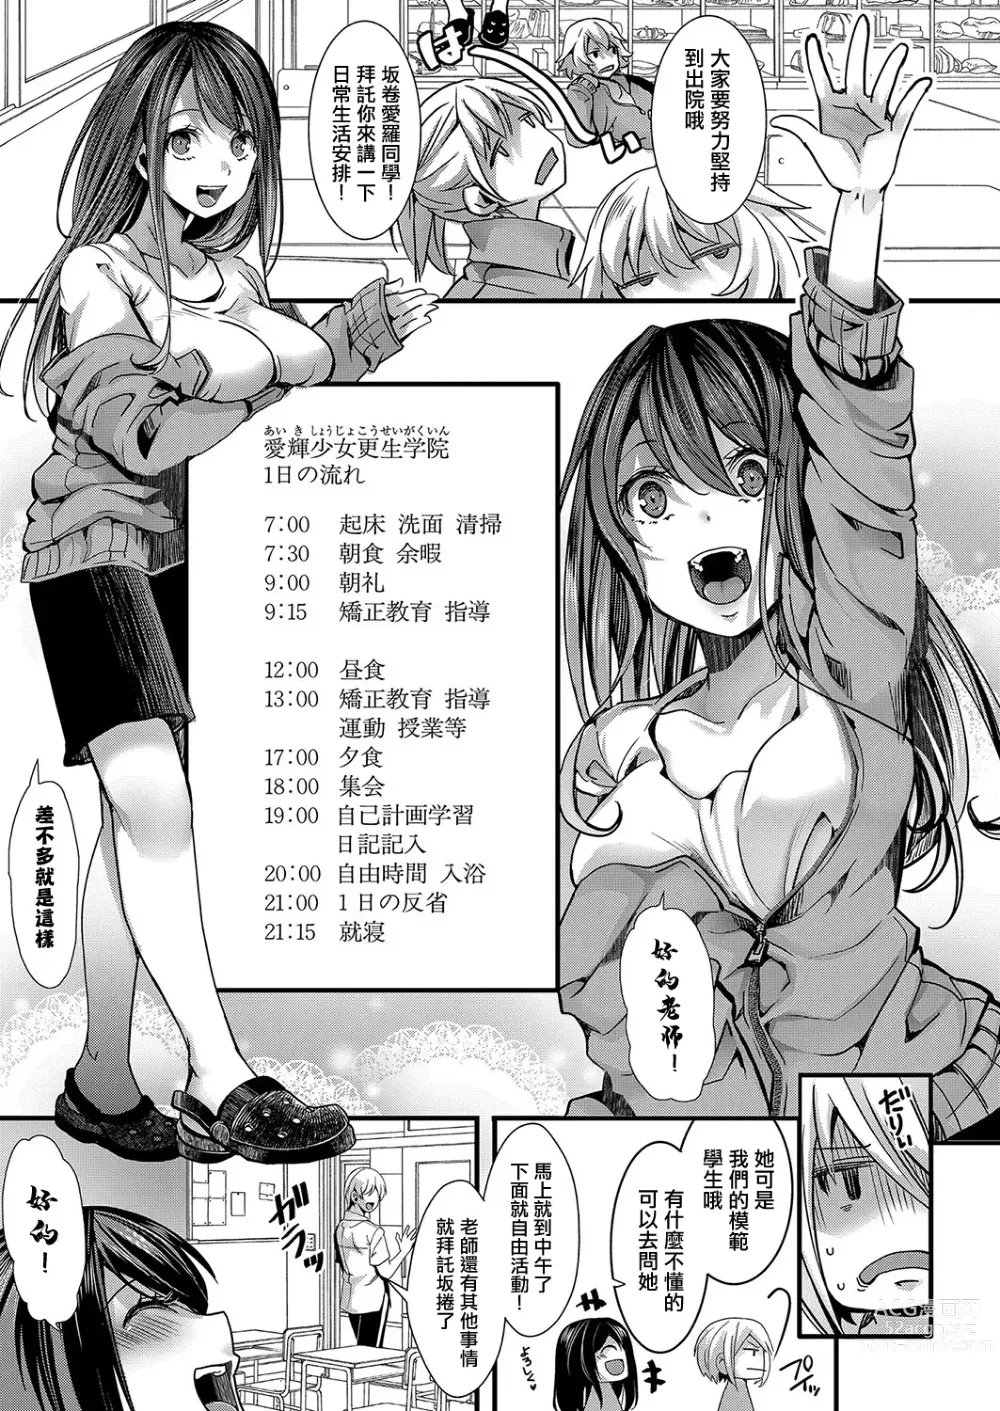 Page 5 of manga Mesuana no Kouseiin 1-jigenme